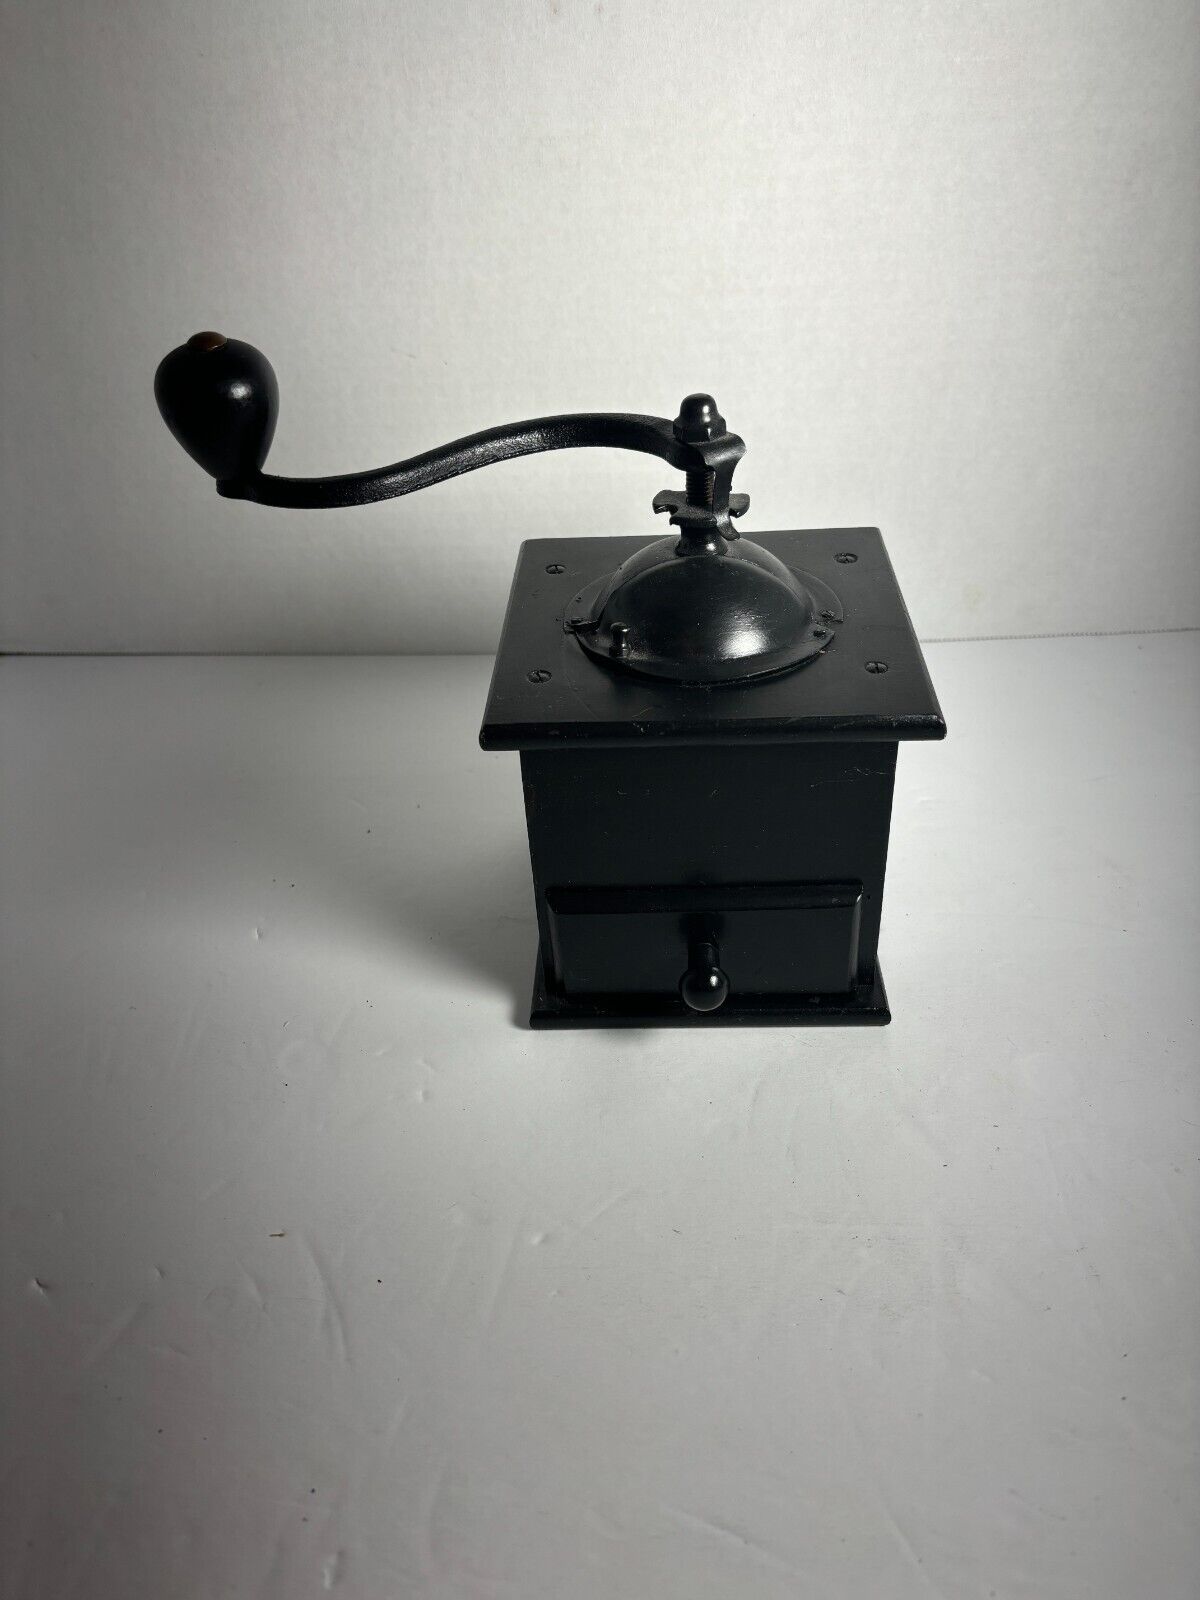 Vintage Black wood coffee grinder works great Great for display too.